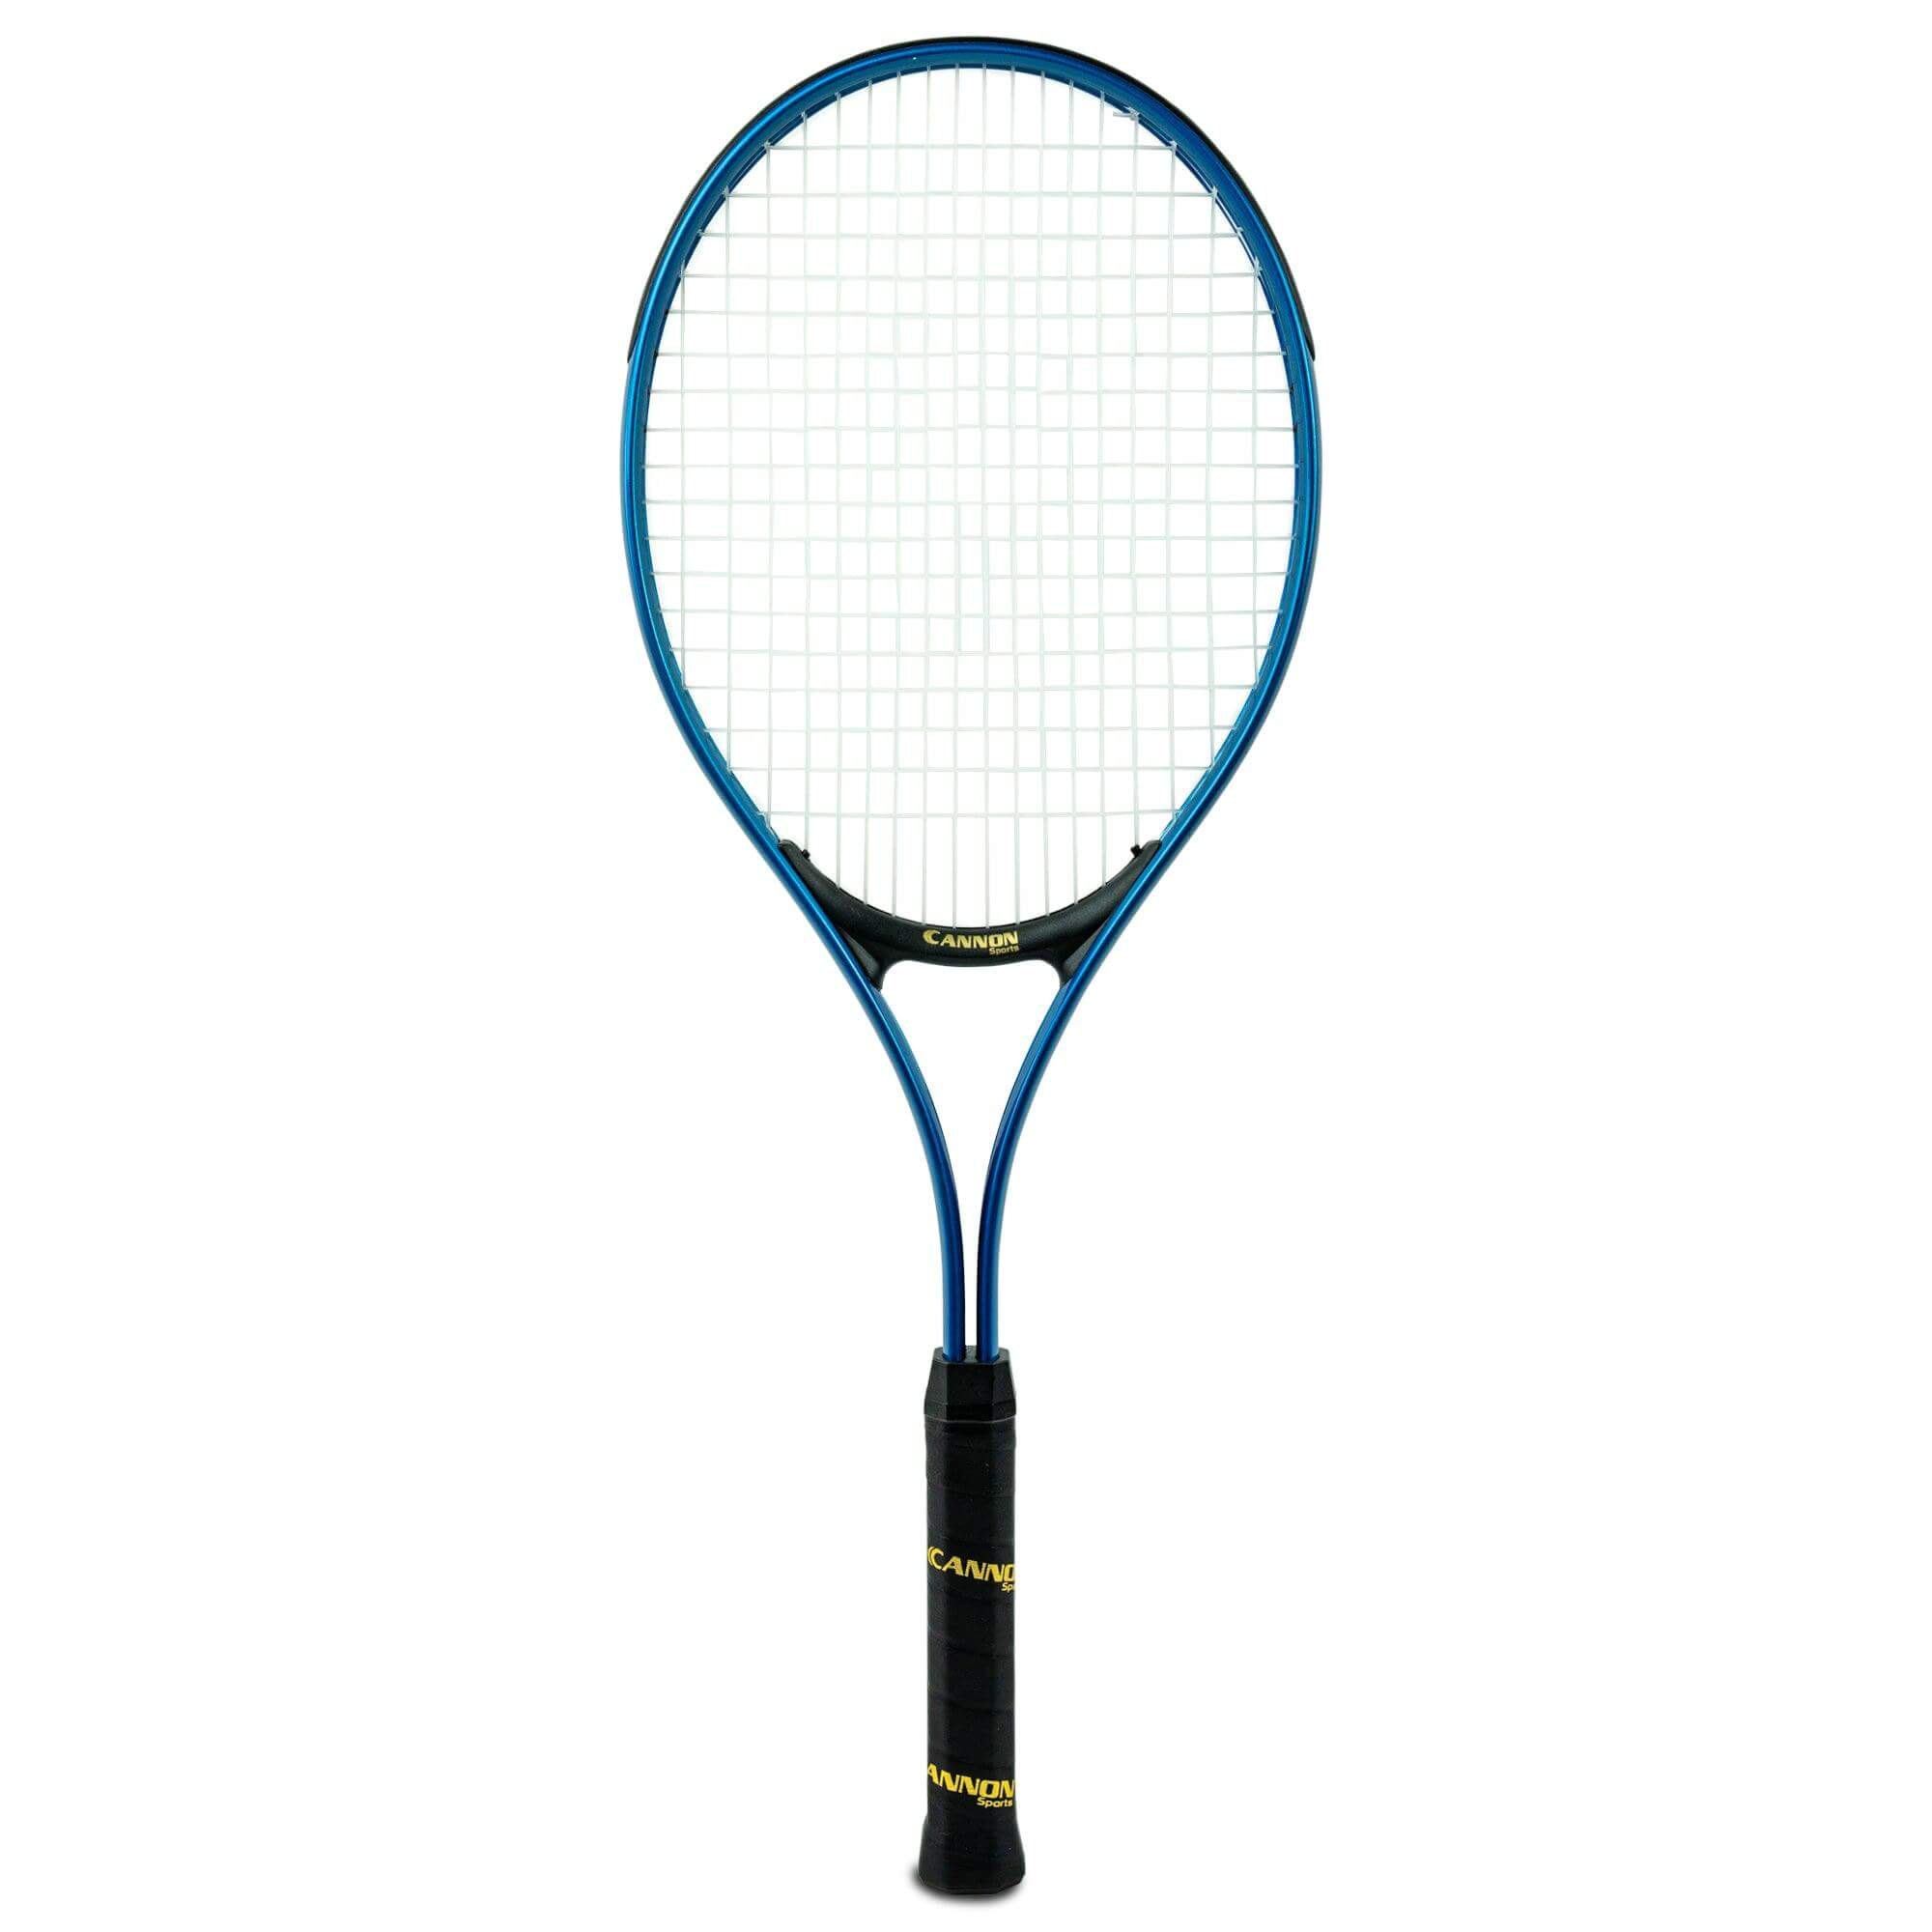 Cannon Sports Midsize Aluminum Tennis Racquet (4 3/8" Grip) - Cannon Sports